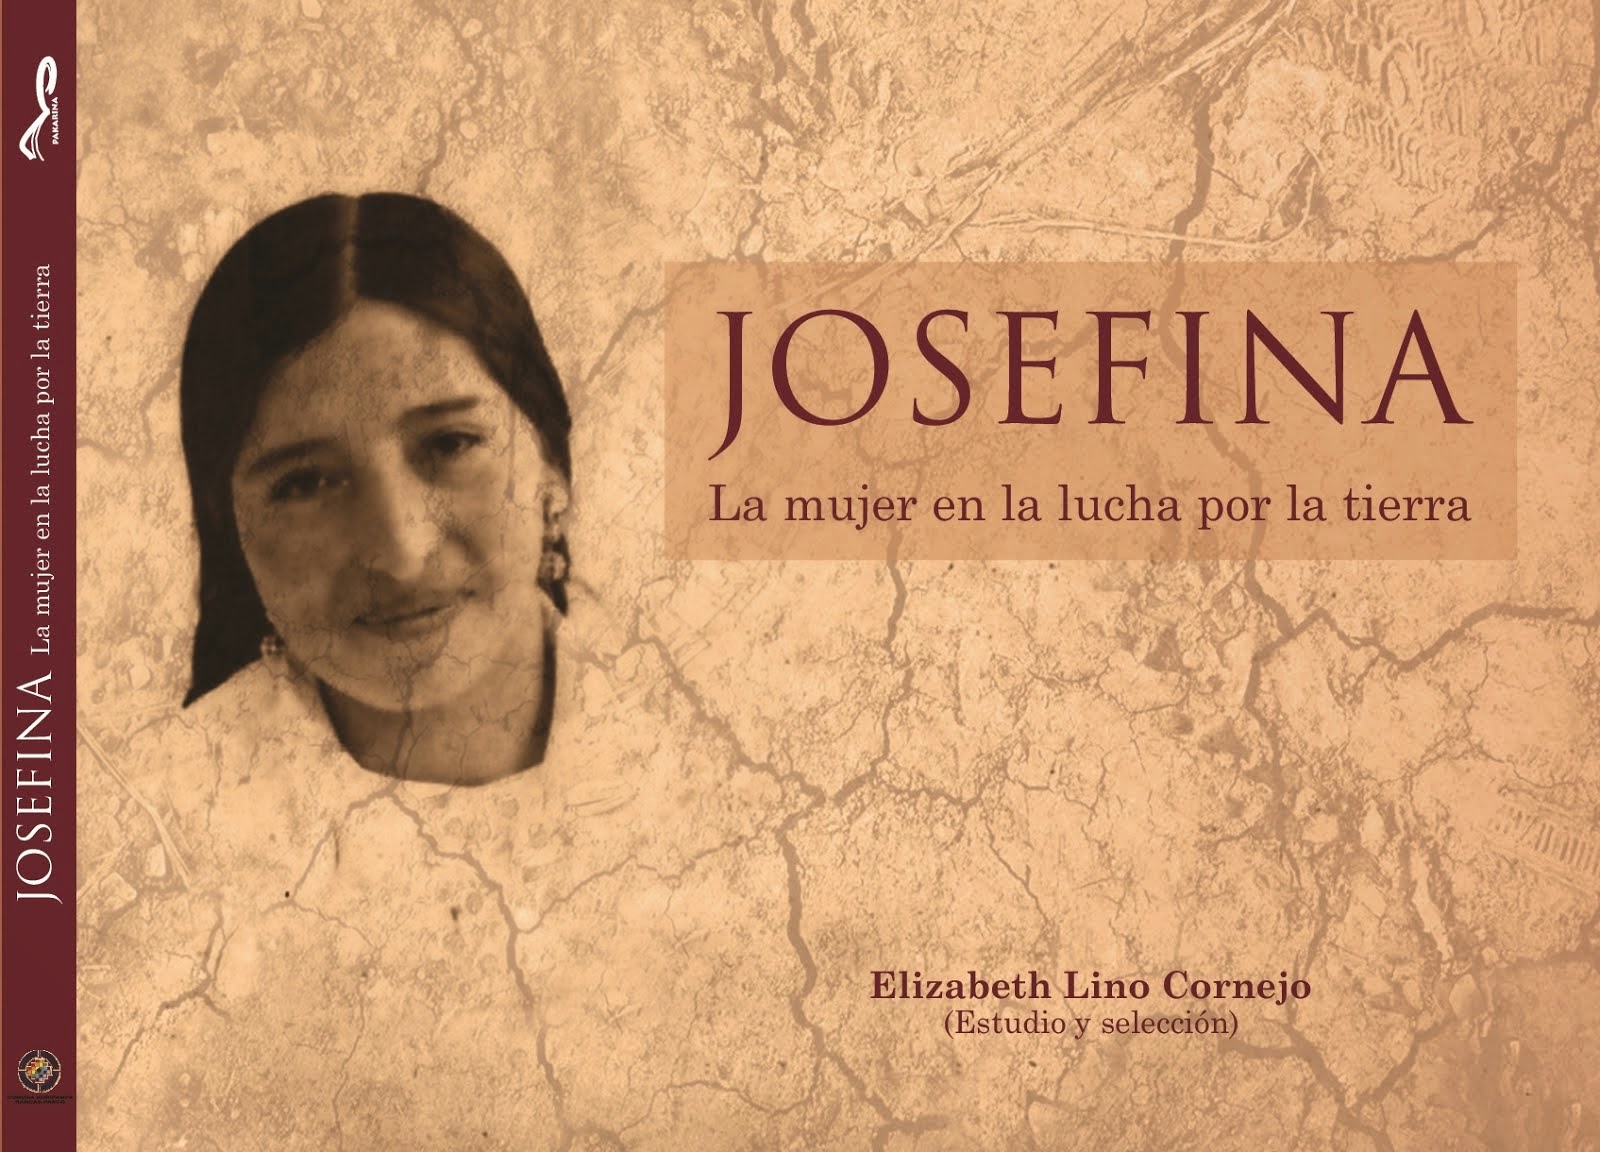 JOSEFINA, la mujer en la lucha por la tierra